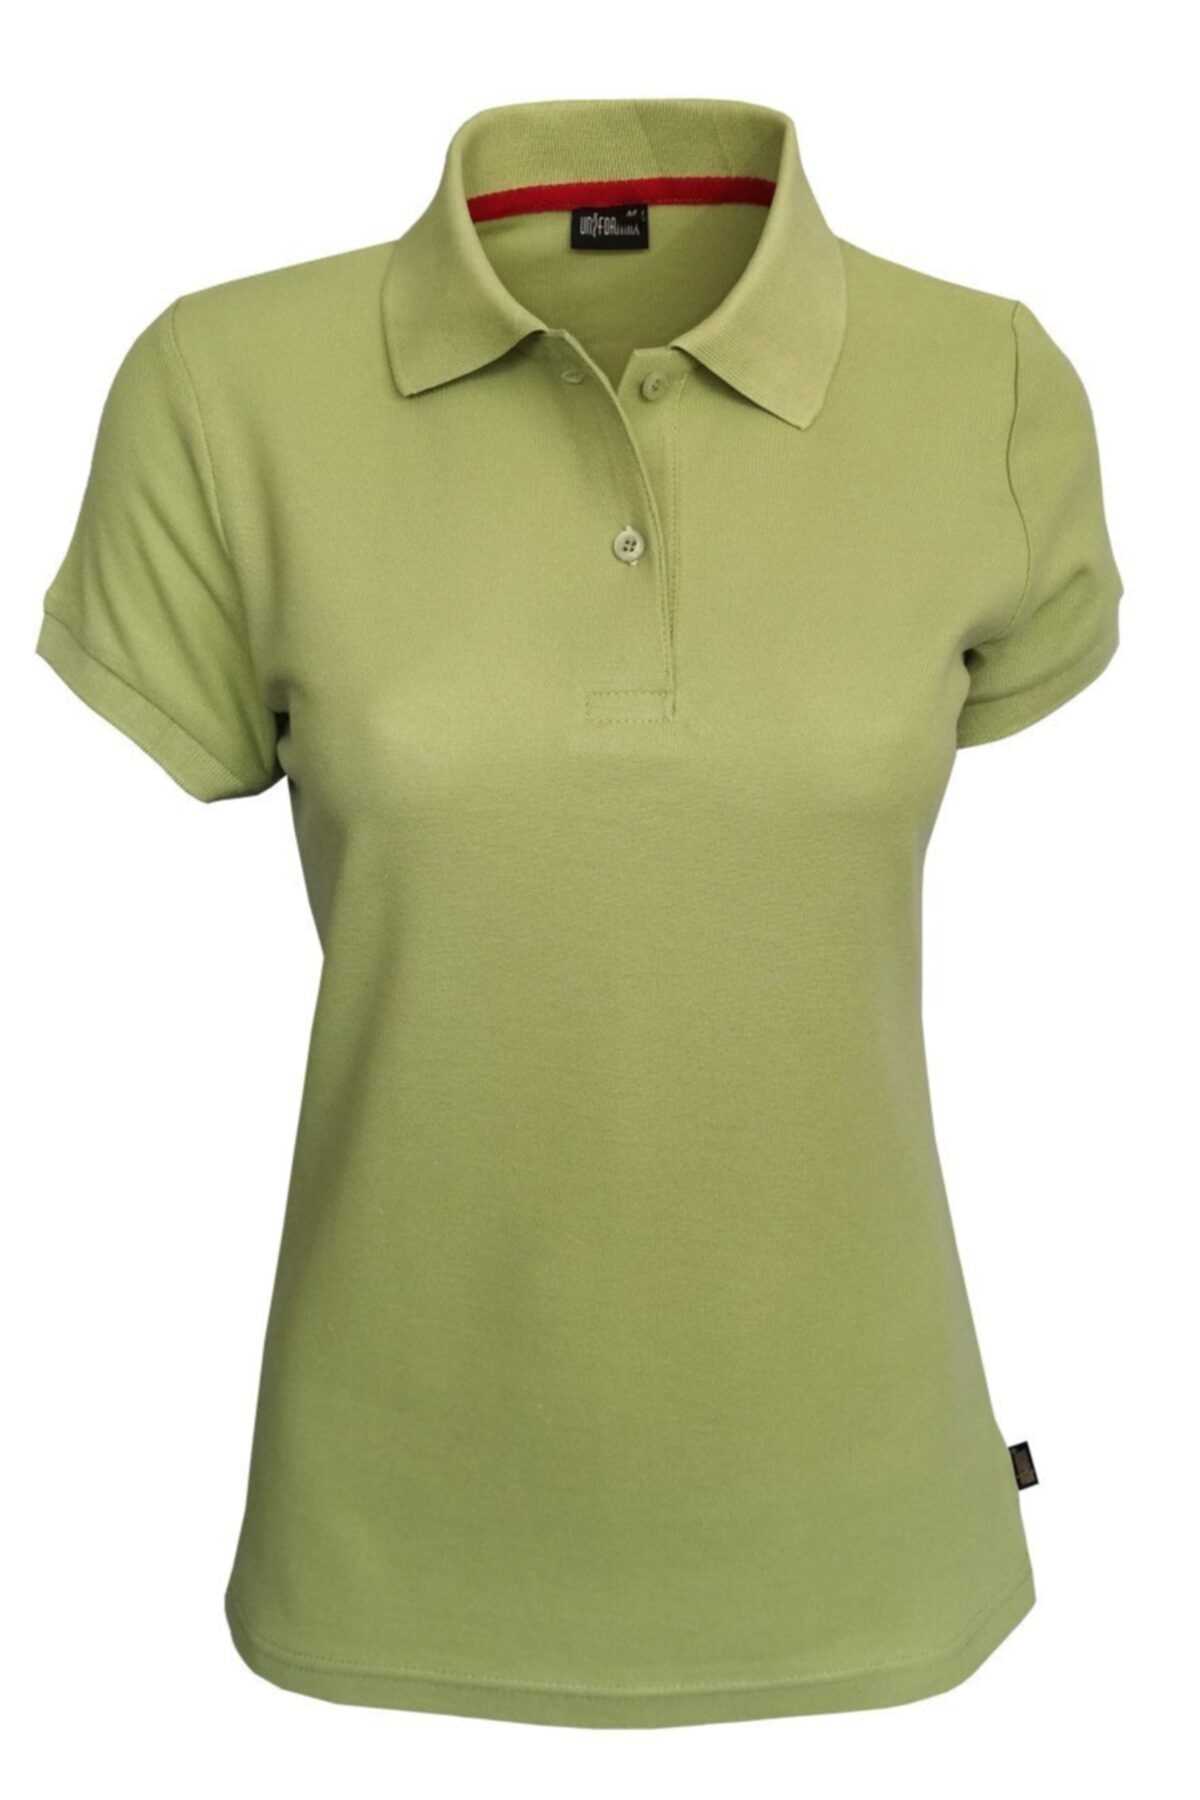 فروشگاه تی شرت زنانه اینترنتی برند uniformax رنگ سبز کد ty54792402